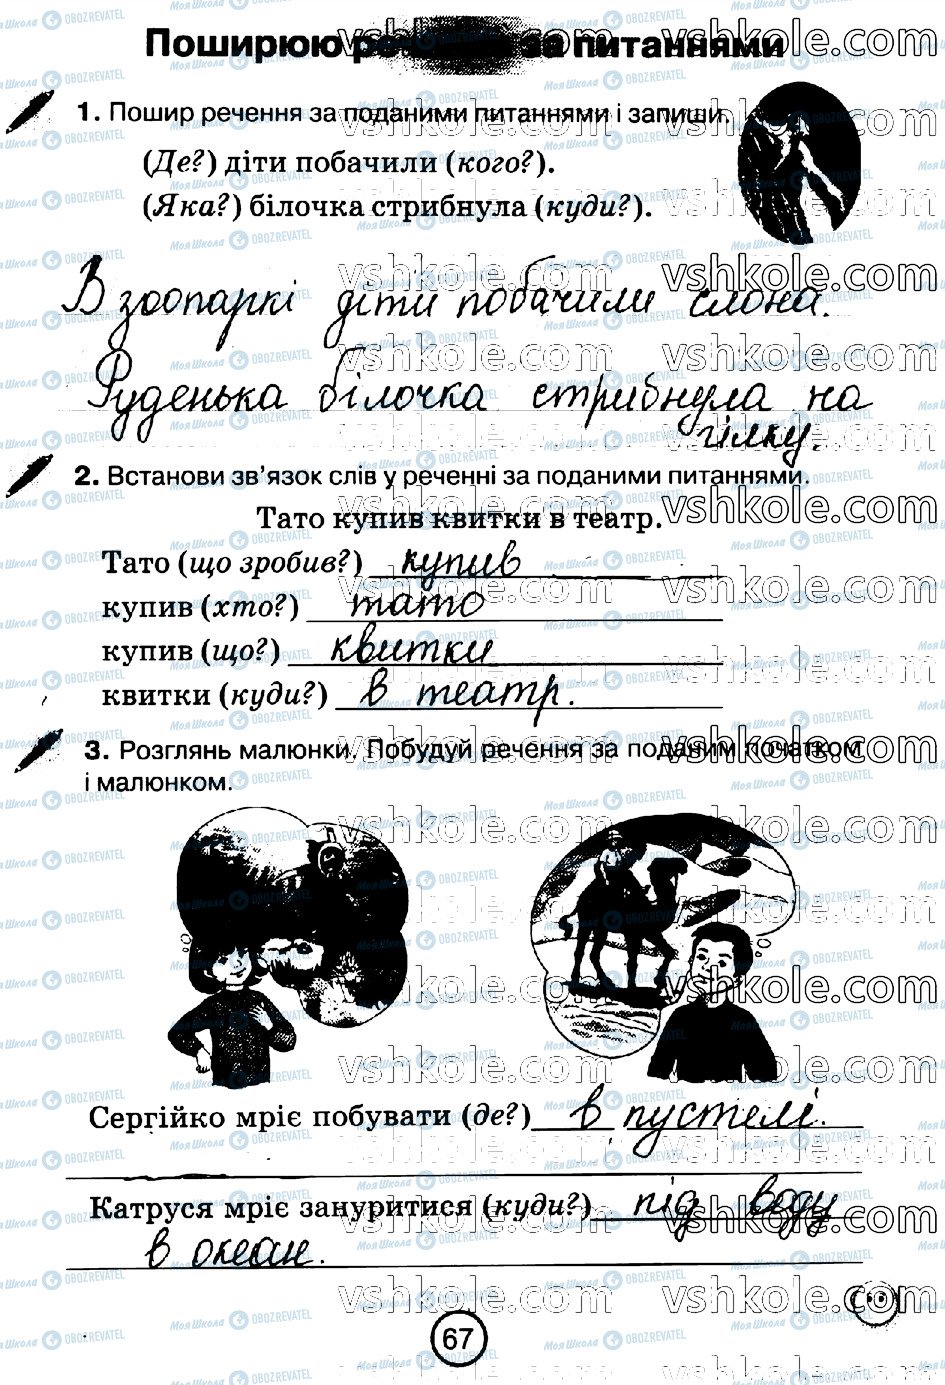 ГДЗ Укр мова 2 класс страница стр67